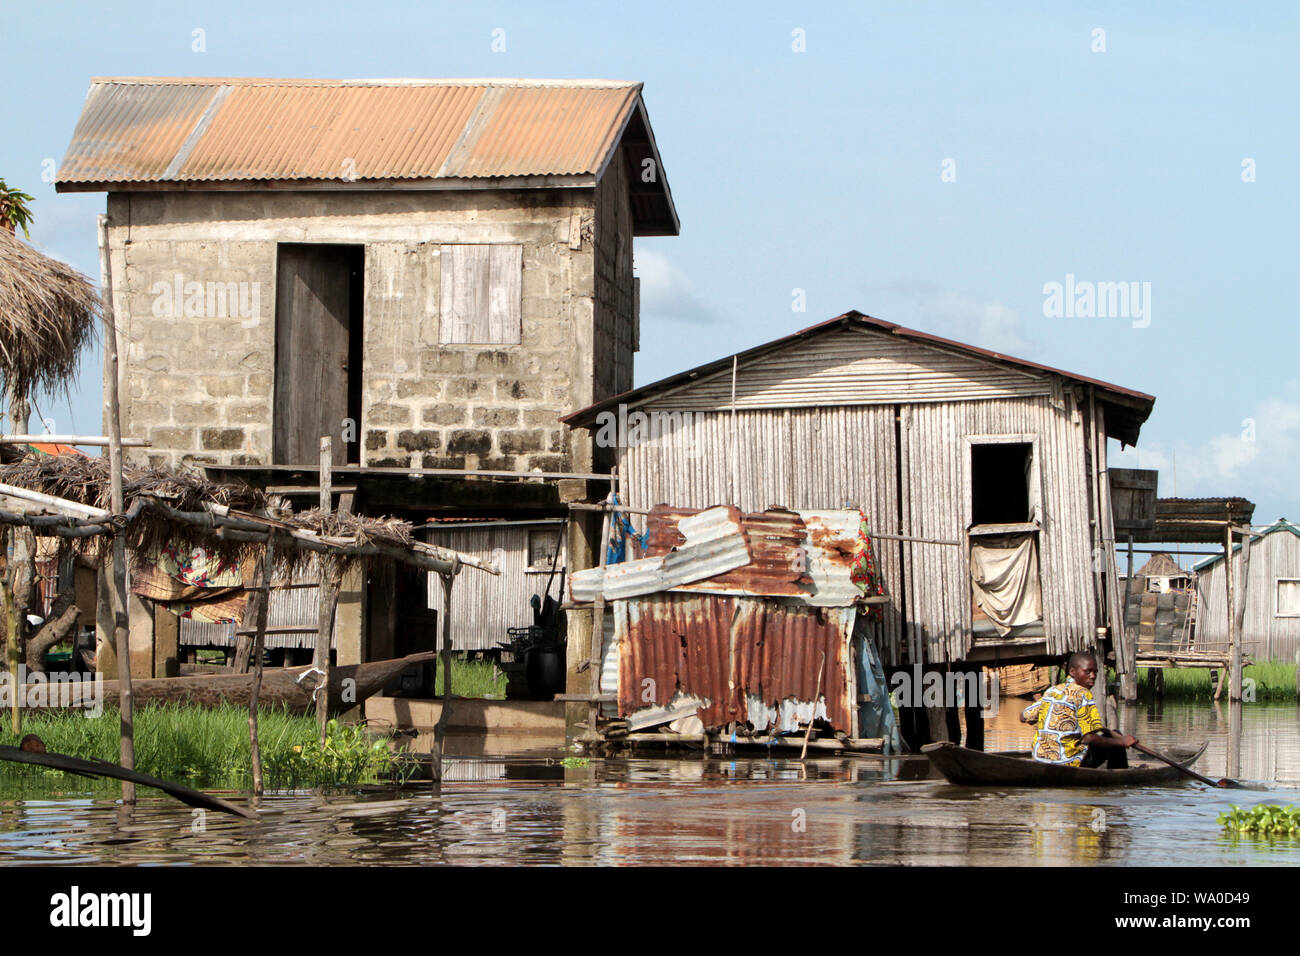 Maisons sur pilotis construites sur l'eau du lac Noukoué à 25 kilomètres au nord de Cotonou, capitale économique du pays. Ganvier. Bénin. Banque D'Images